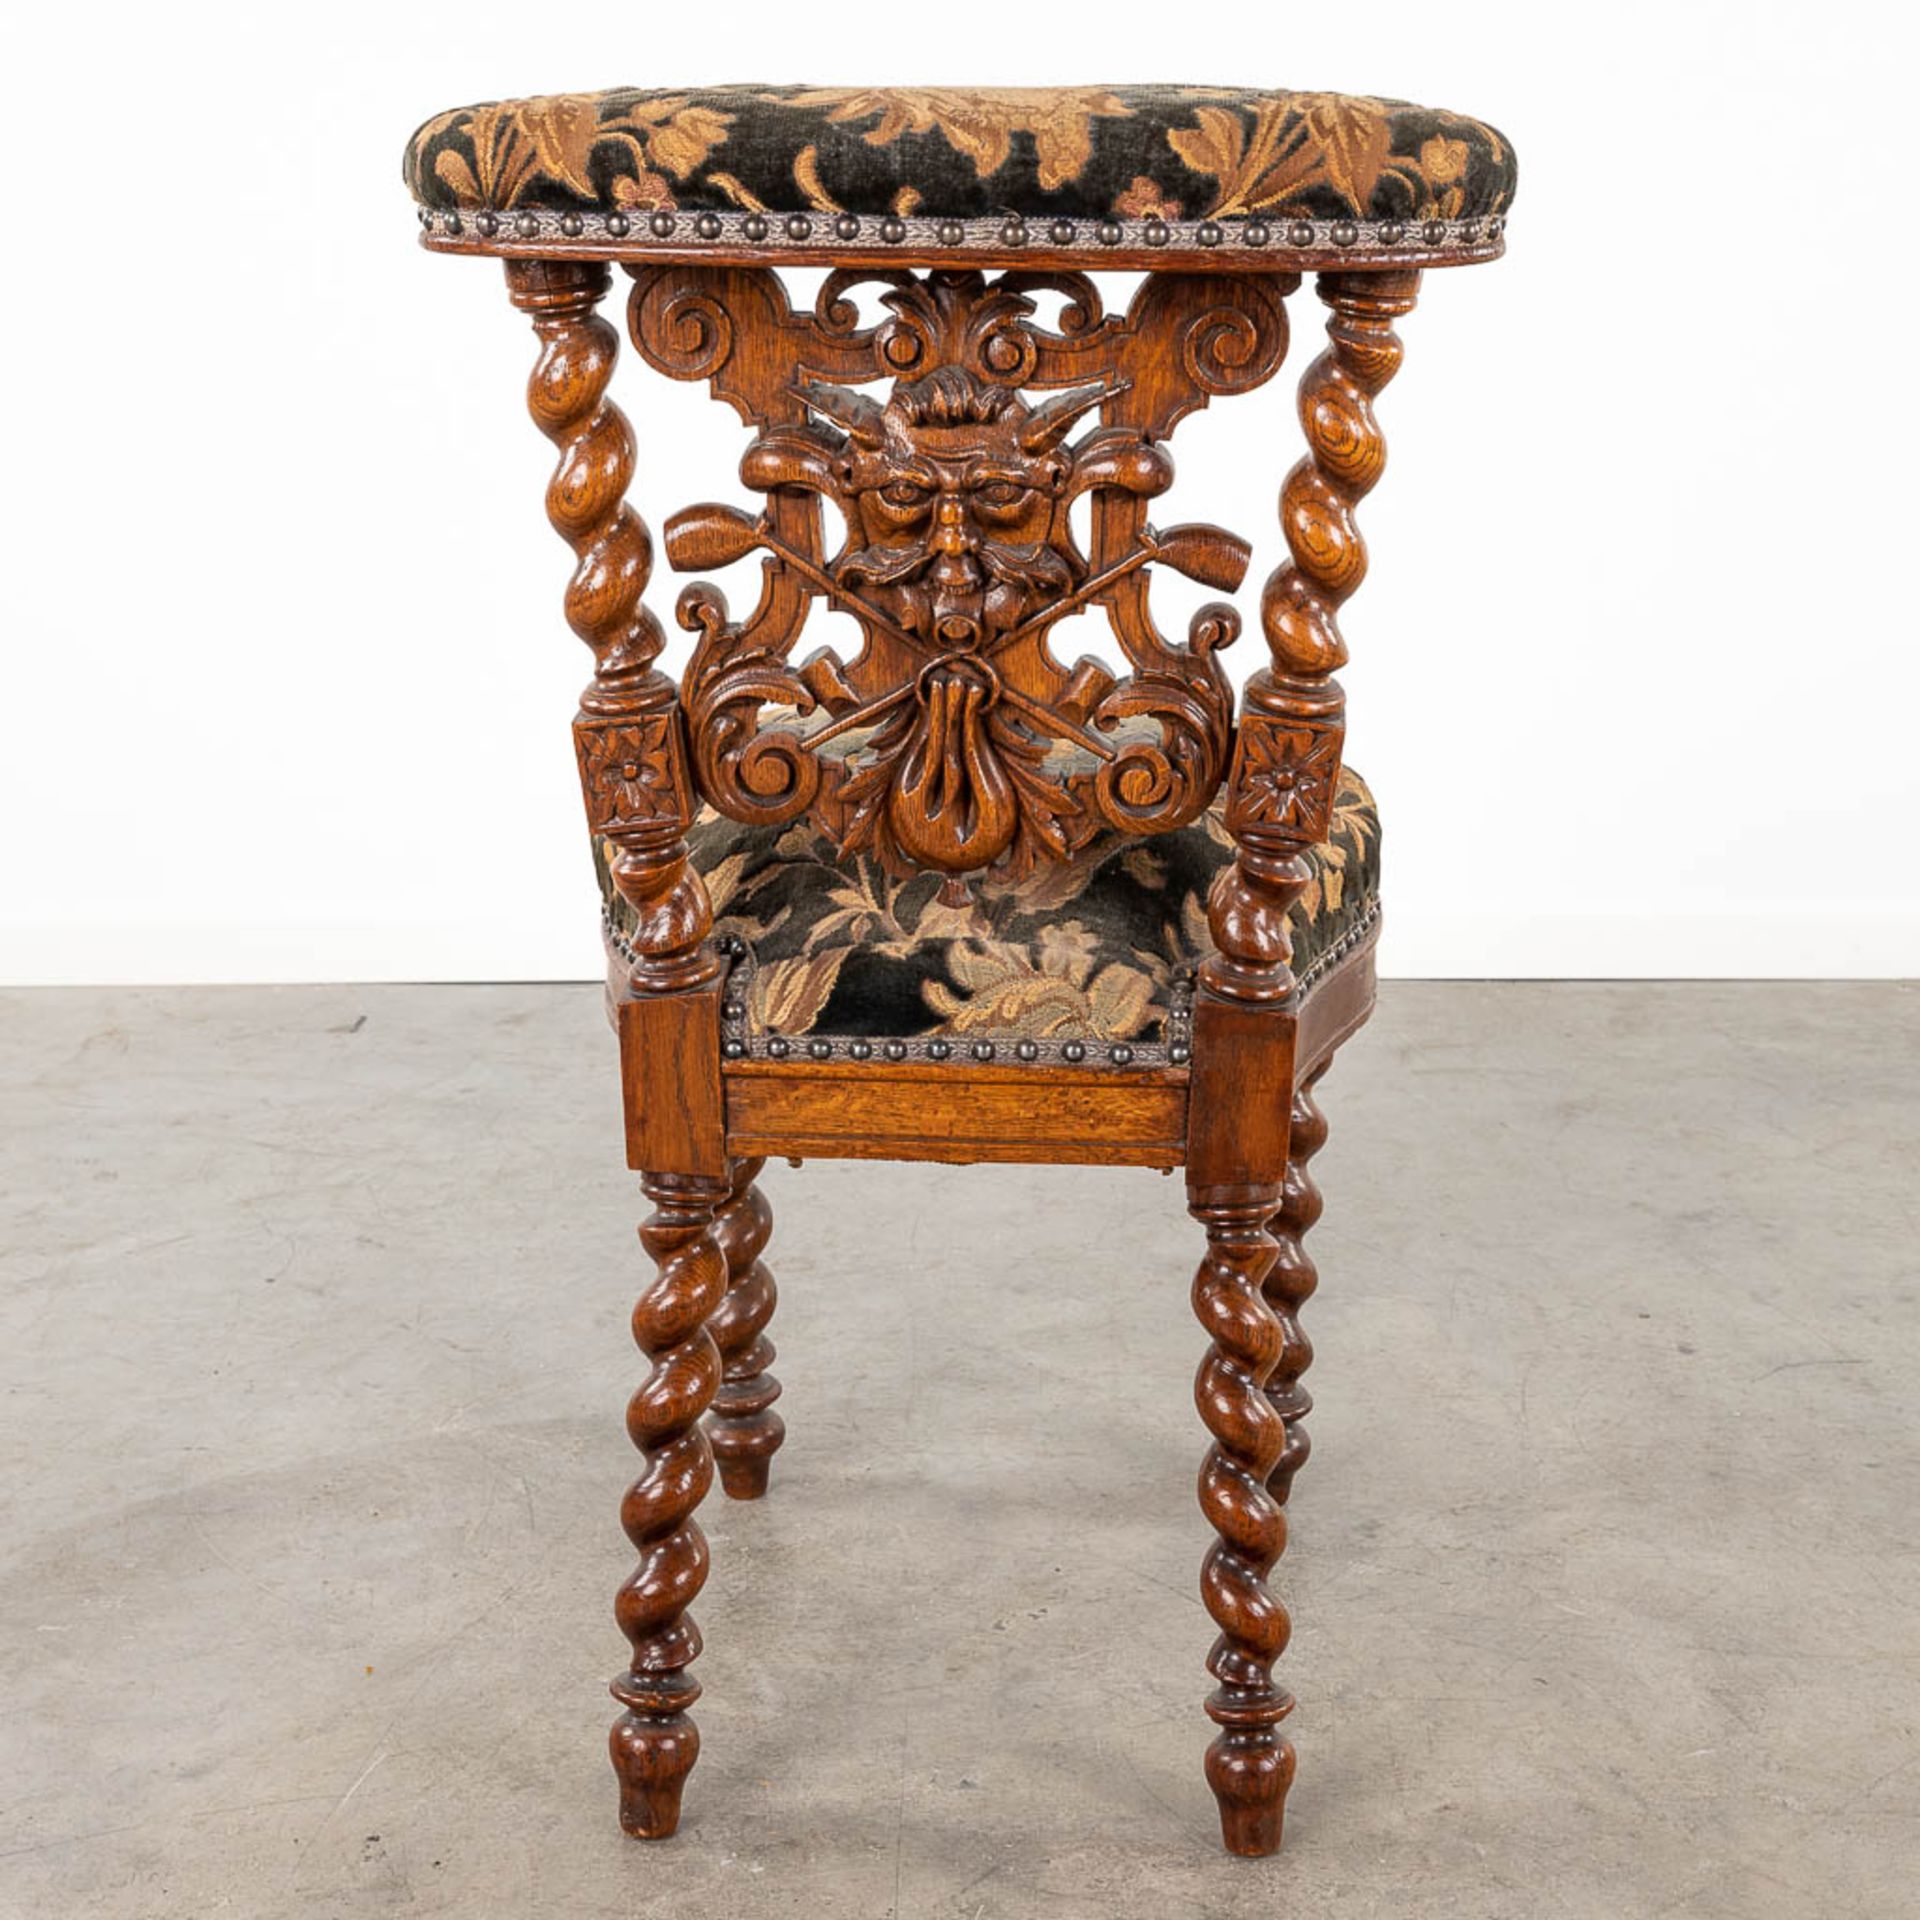 A set of 4 antique wood-sculptured smoker's chairs, oak. Circa 1900. (L:55 x W:44 x H:80 cm) - Bild 8 aus 15